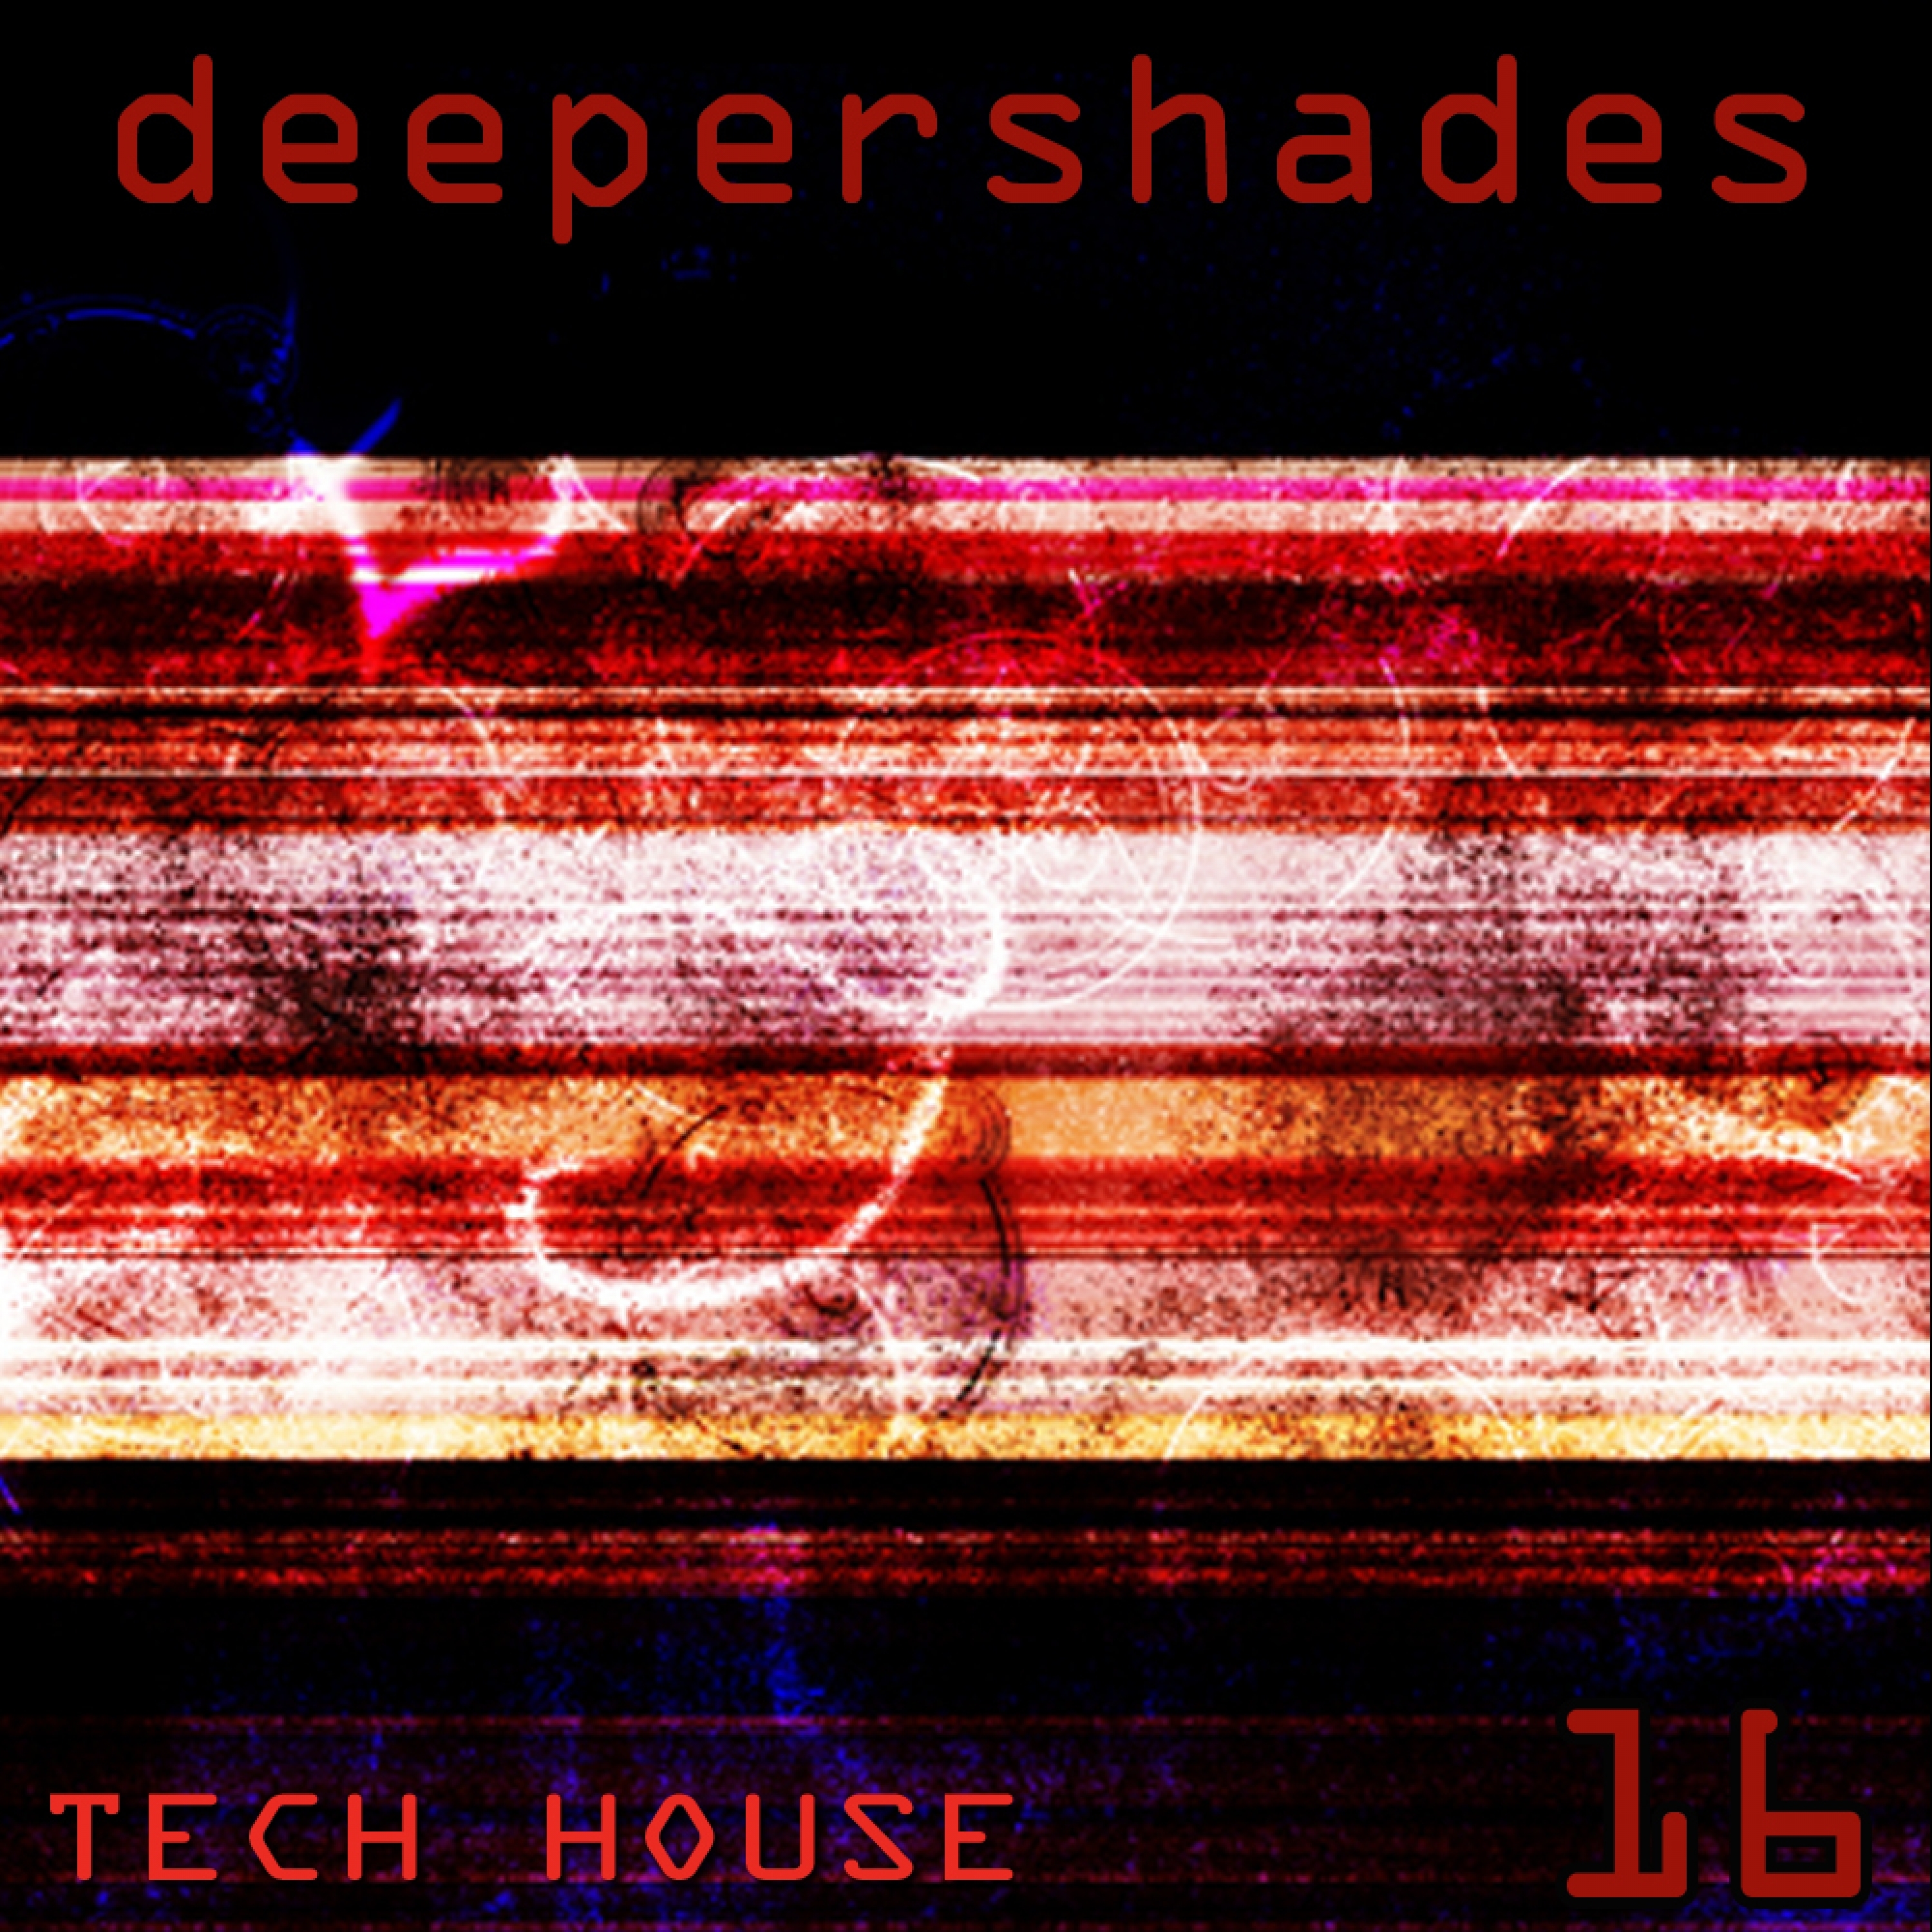 Deeper Shades Tech House 16